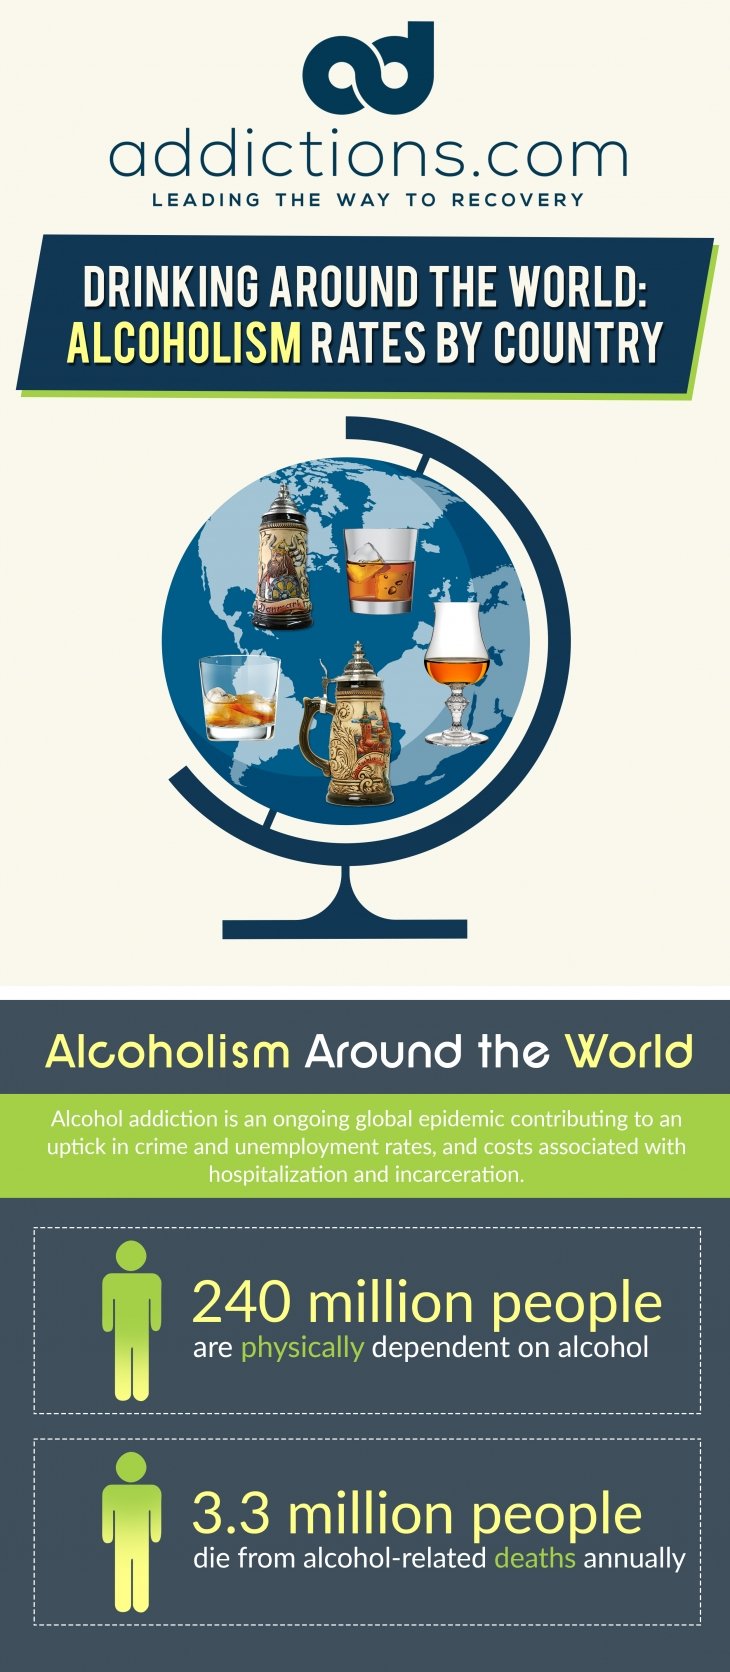 Drinking around the world